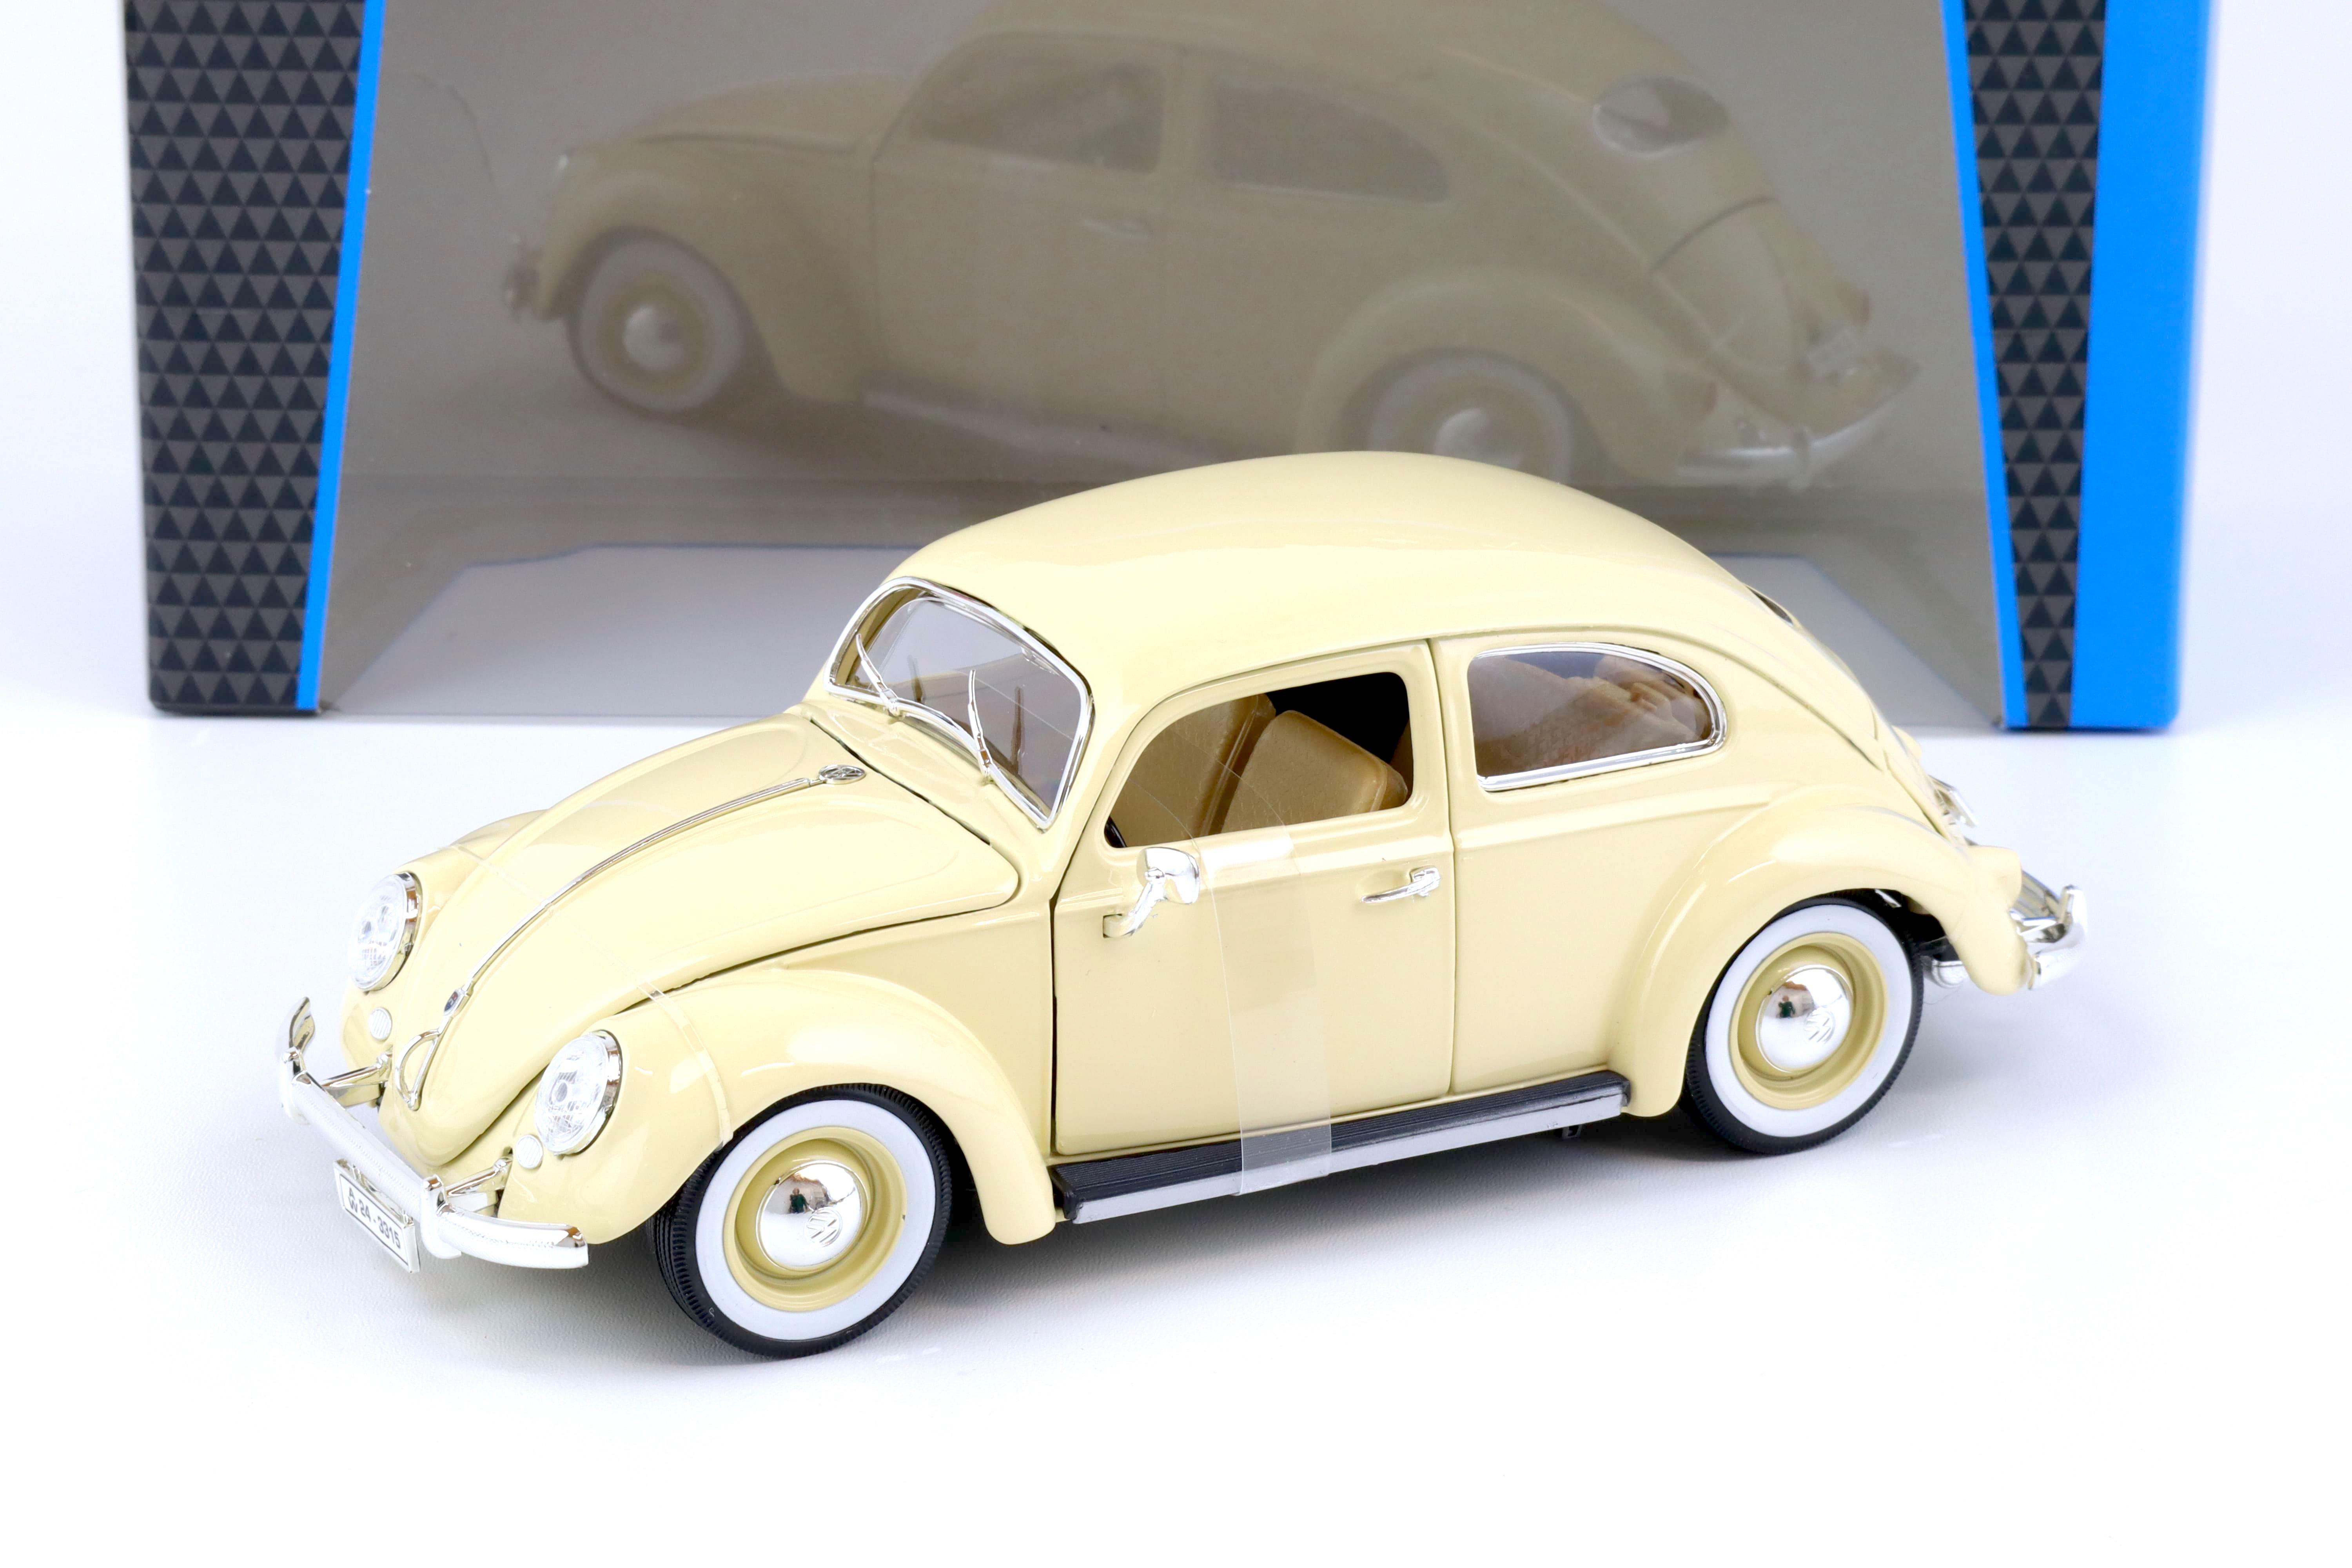 1:18 Bburago VW Käfer Beetle 1955 cream beige